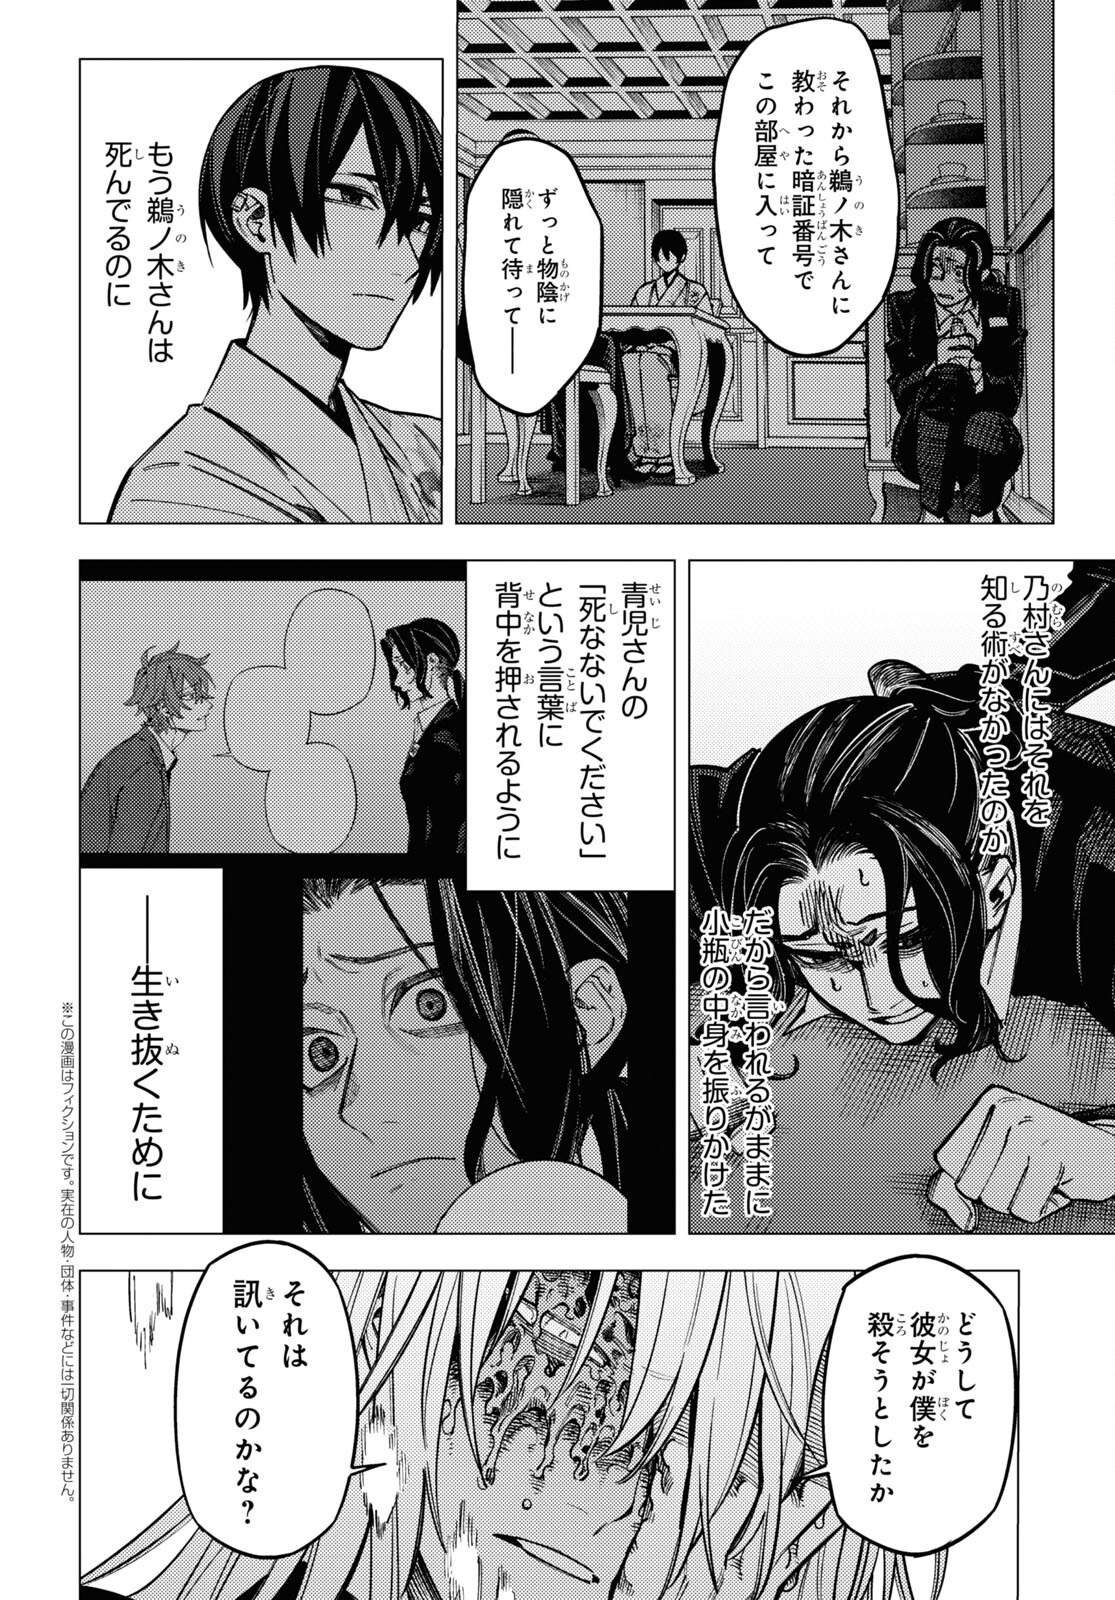 Jigoku Kurayami Hana mo naki - Chapter 47 - Page 2